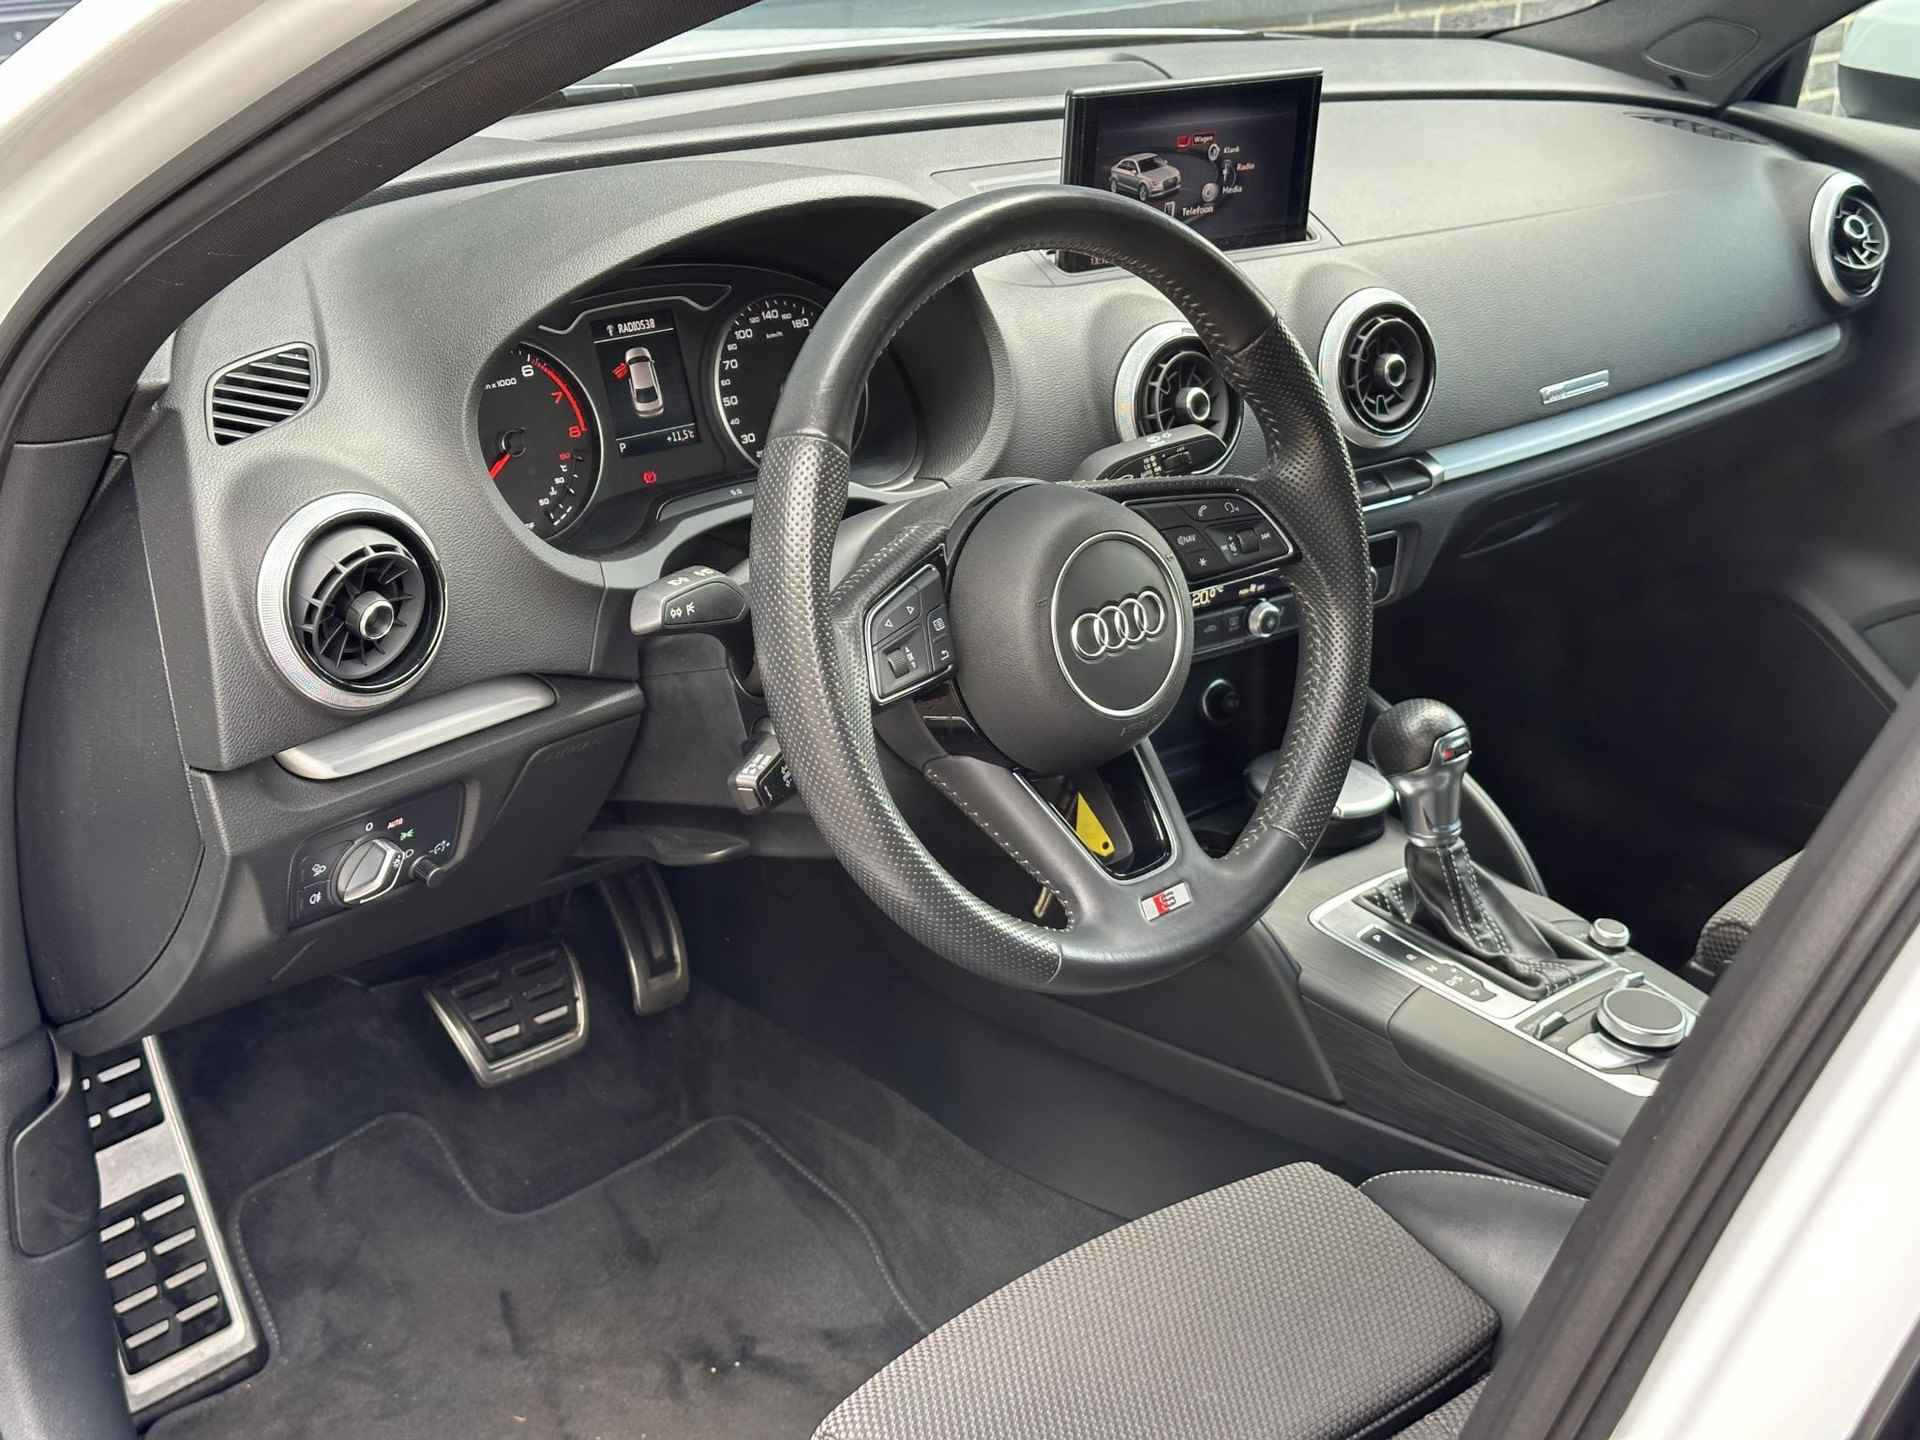 Audi A3 Limousine 1.0 TFSI Sport S Line Edition AUTOMAAT / Navigatie / 18inch LM velgen / LED koplampen / - 19/45